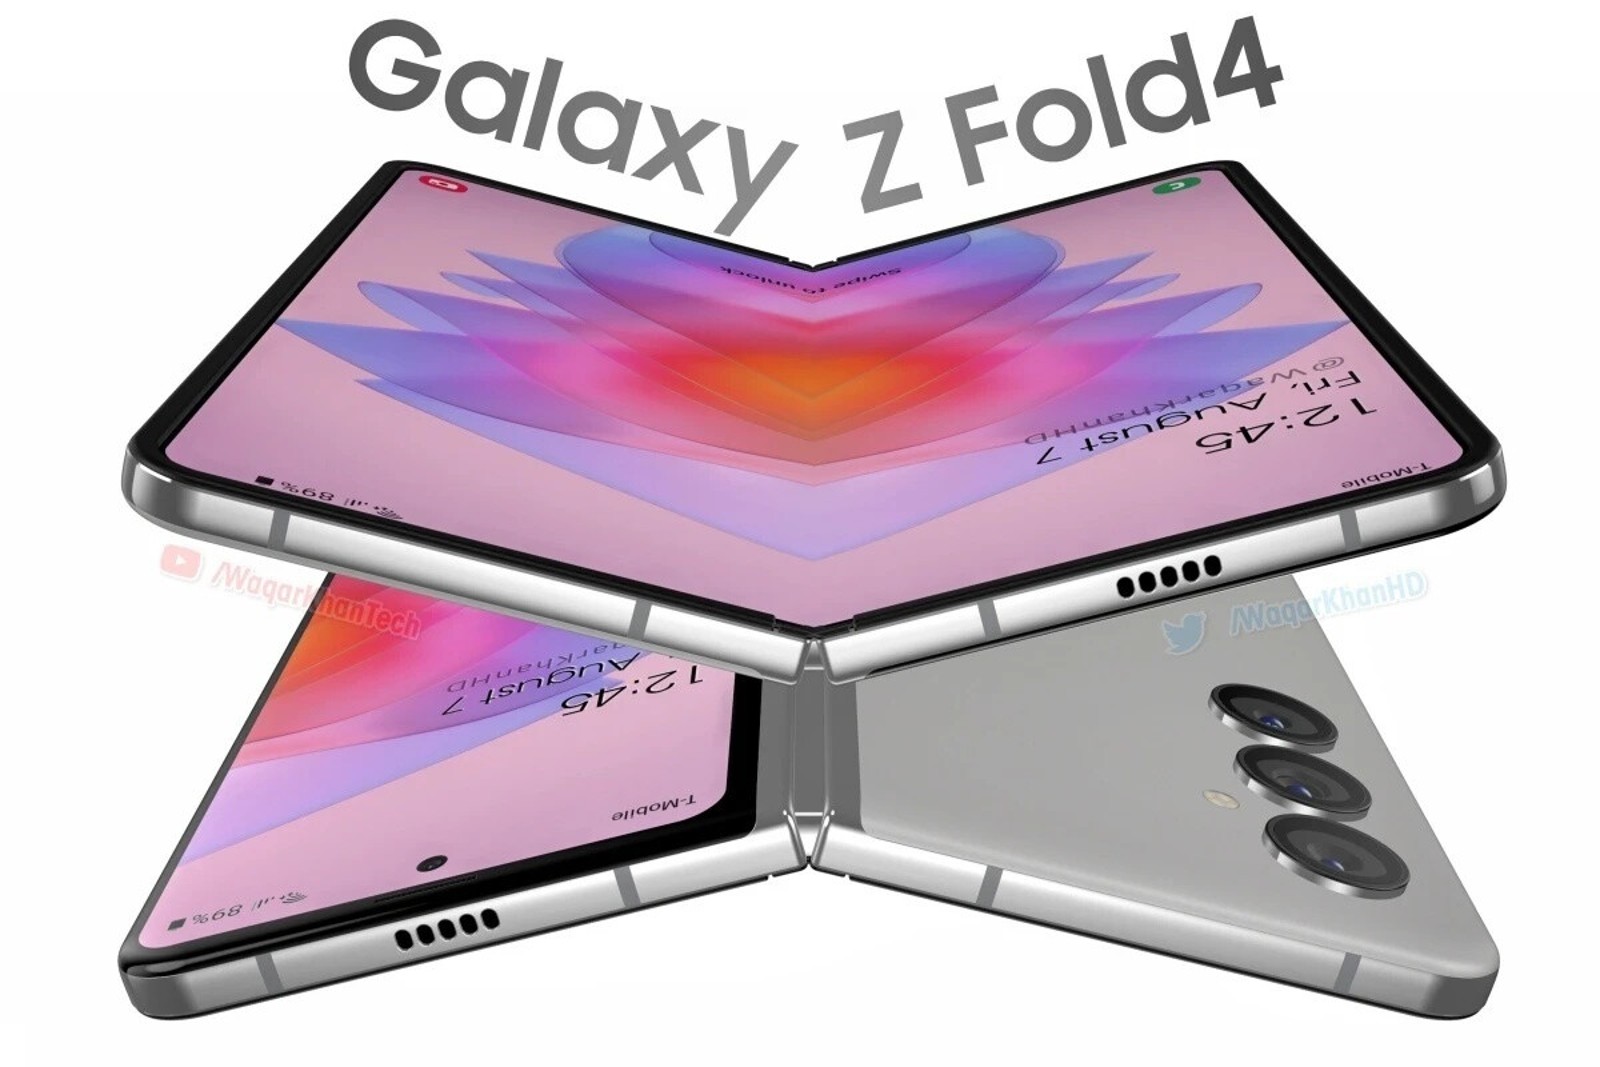 samsung galaxy z fold4, Samsung Galaxy Z Fold4: Αναμένεται λίγο πιο ελαφρύ